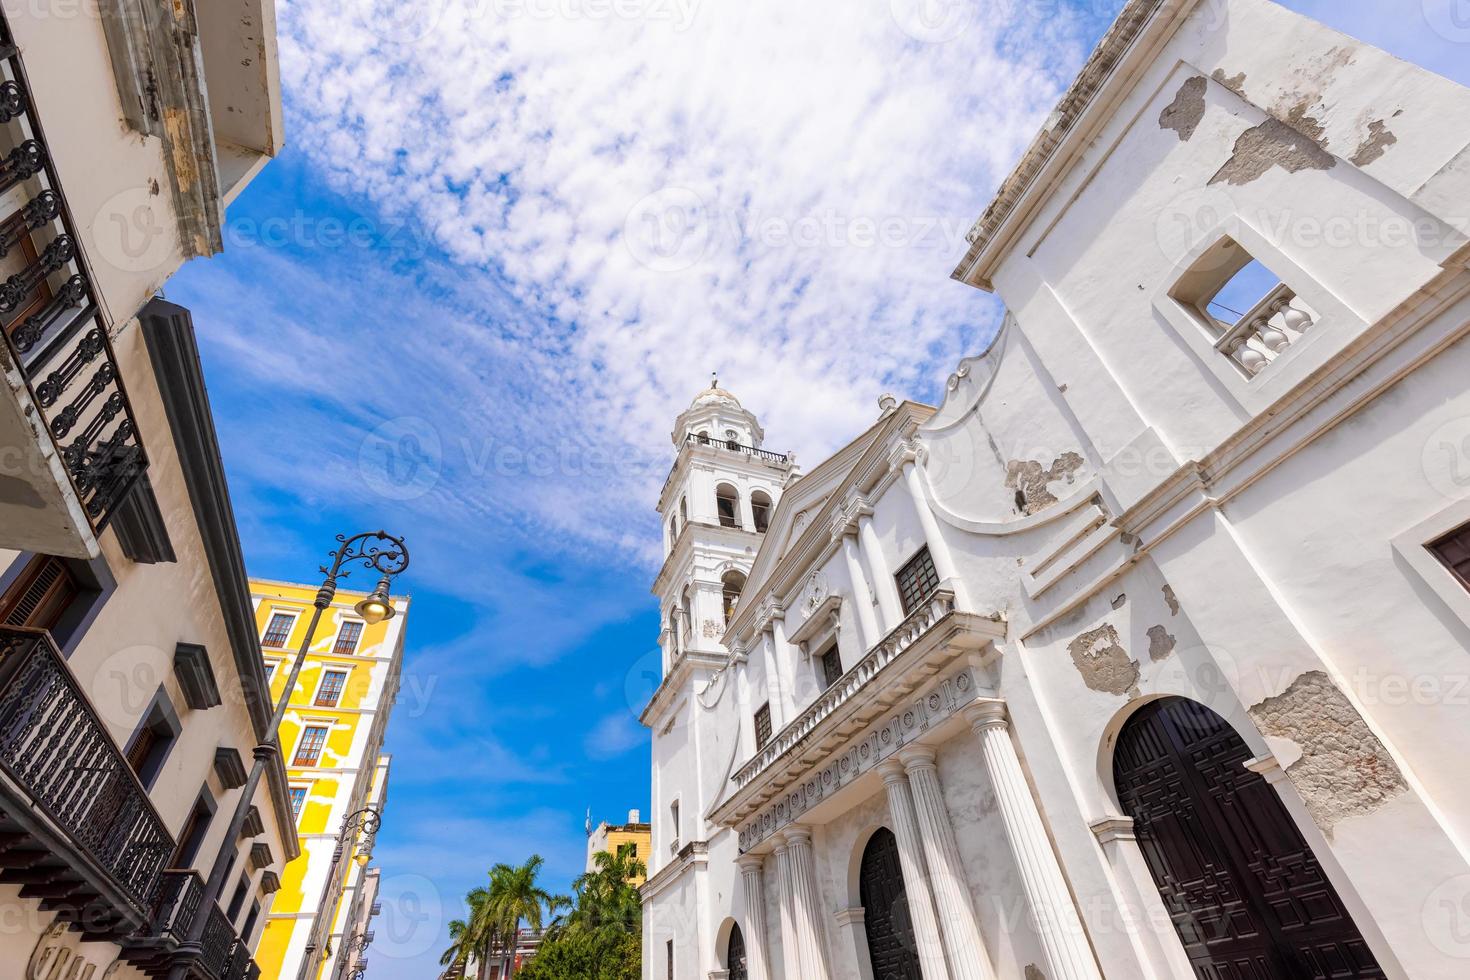 méxico, veracruz, calles coloridas y casas coloniales en el centro histórico de la ciudad cerca del paseo marítimo foto